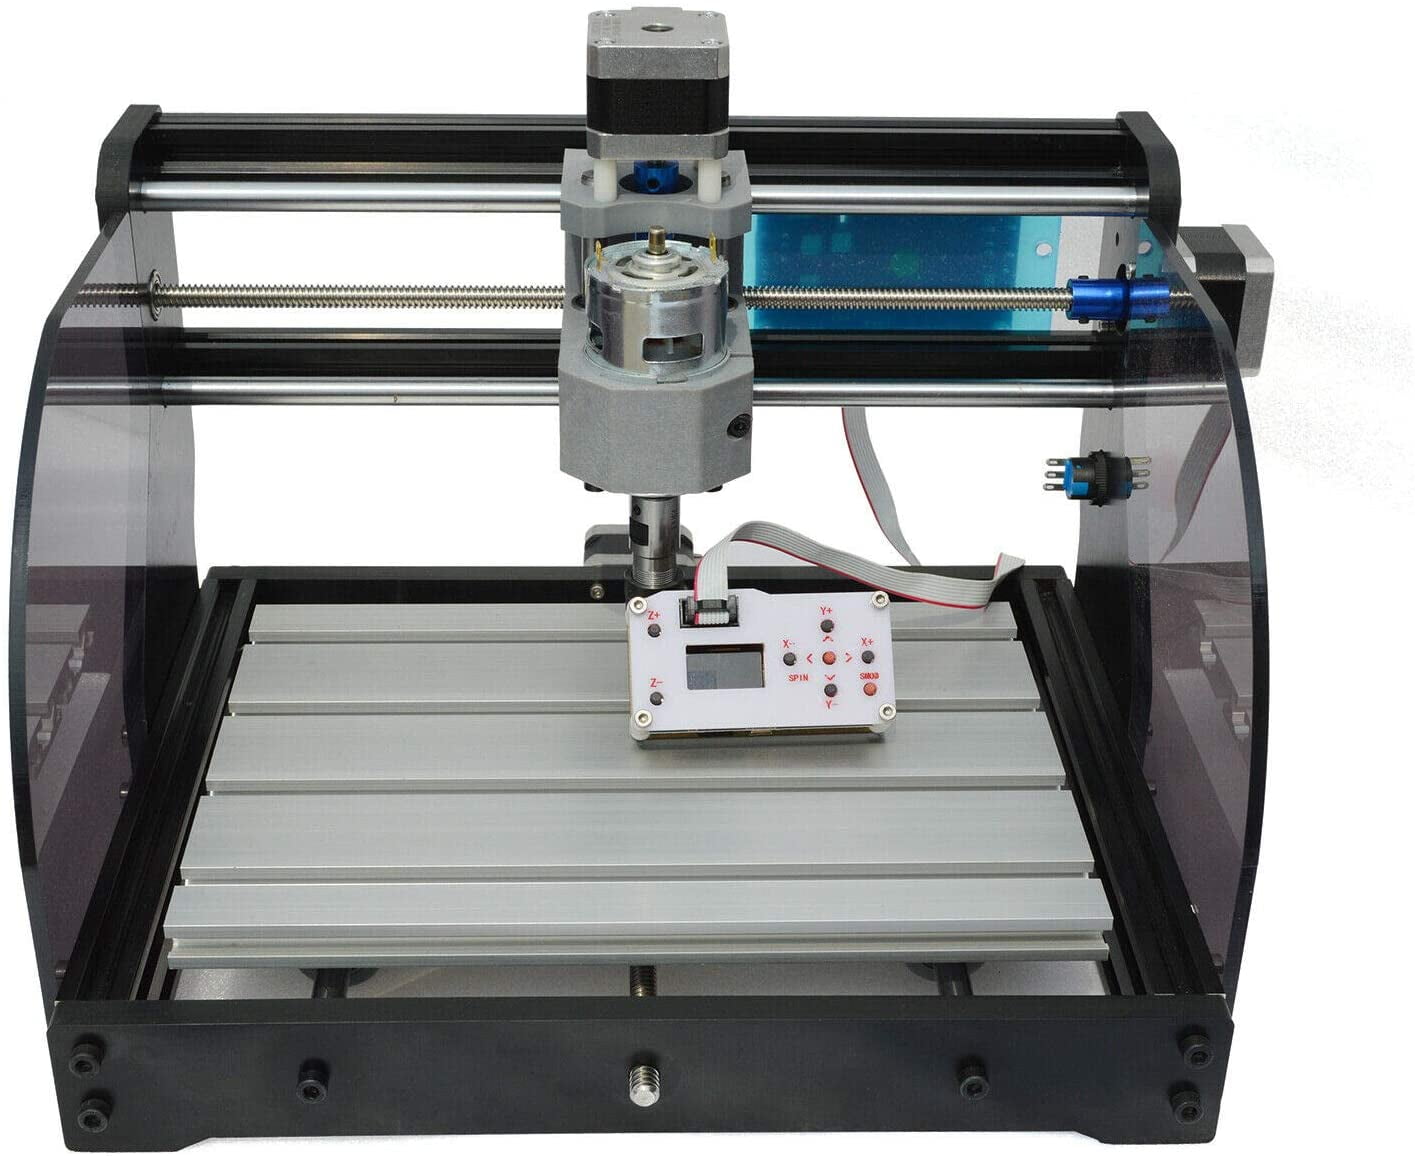 Universal Engraver - DIY PCB CNC Laser Engraving and Etching Machine -  10000 mW